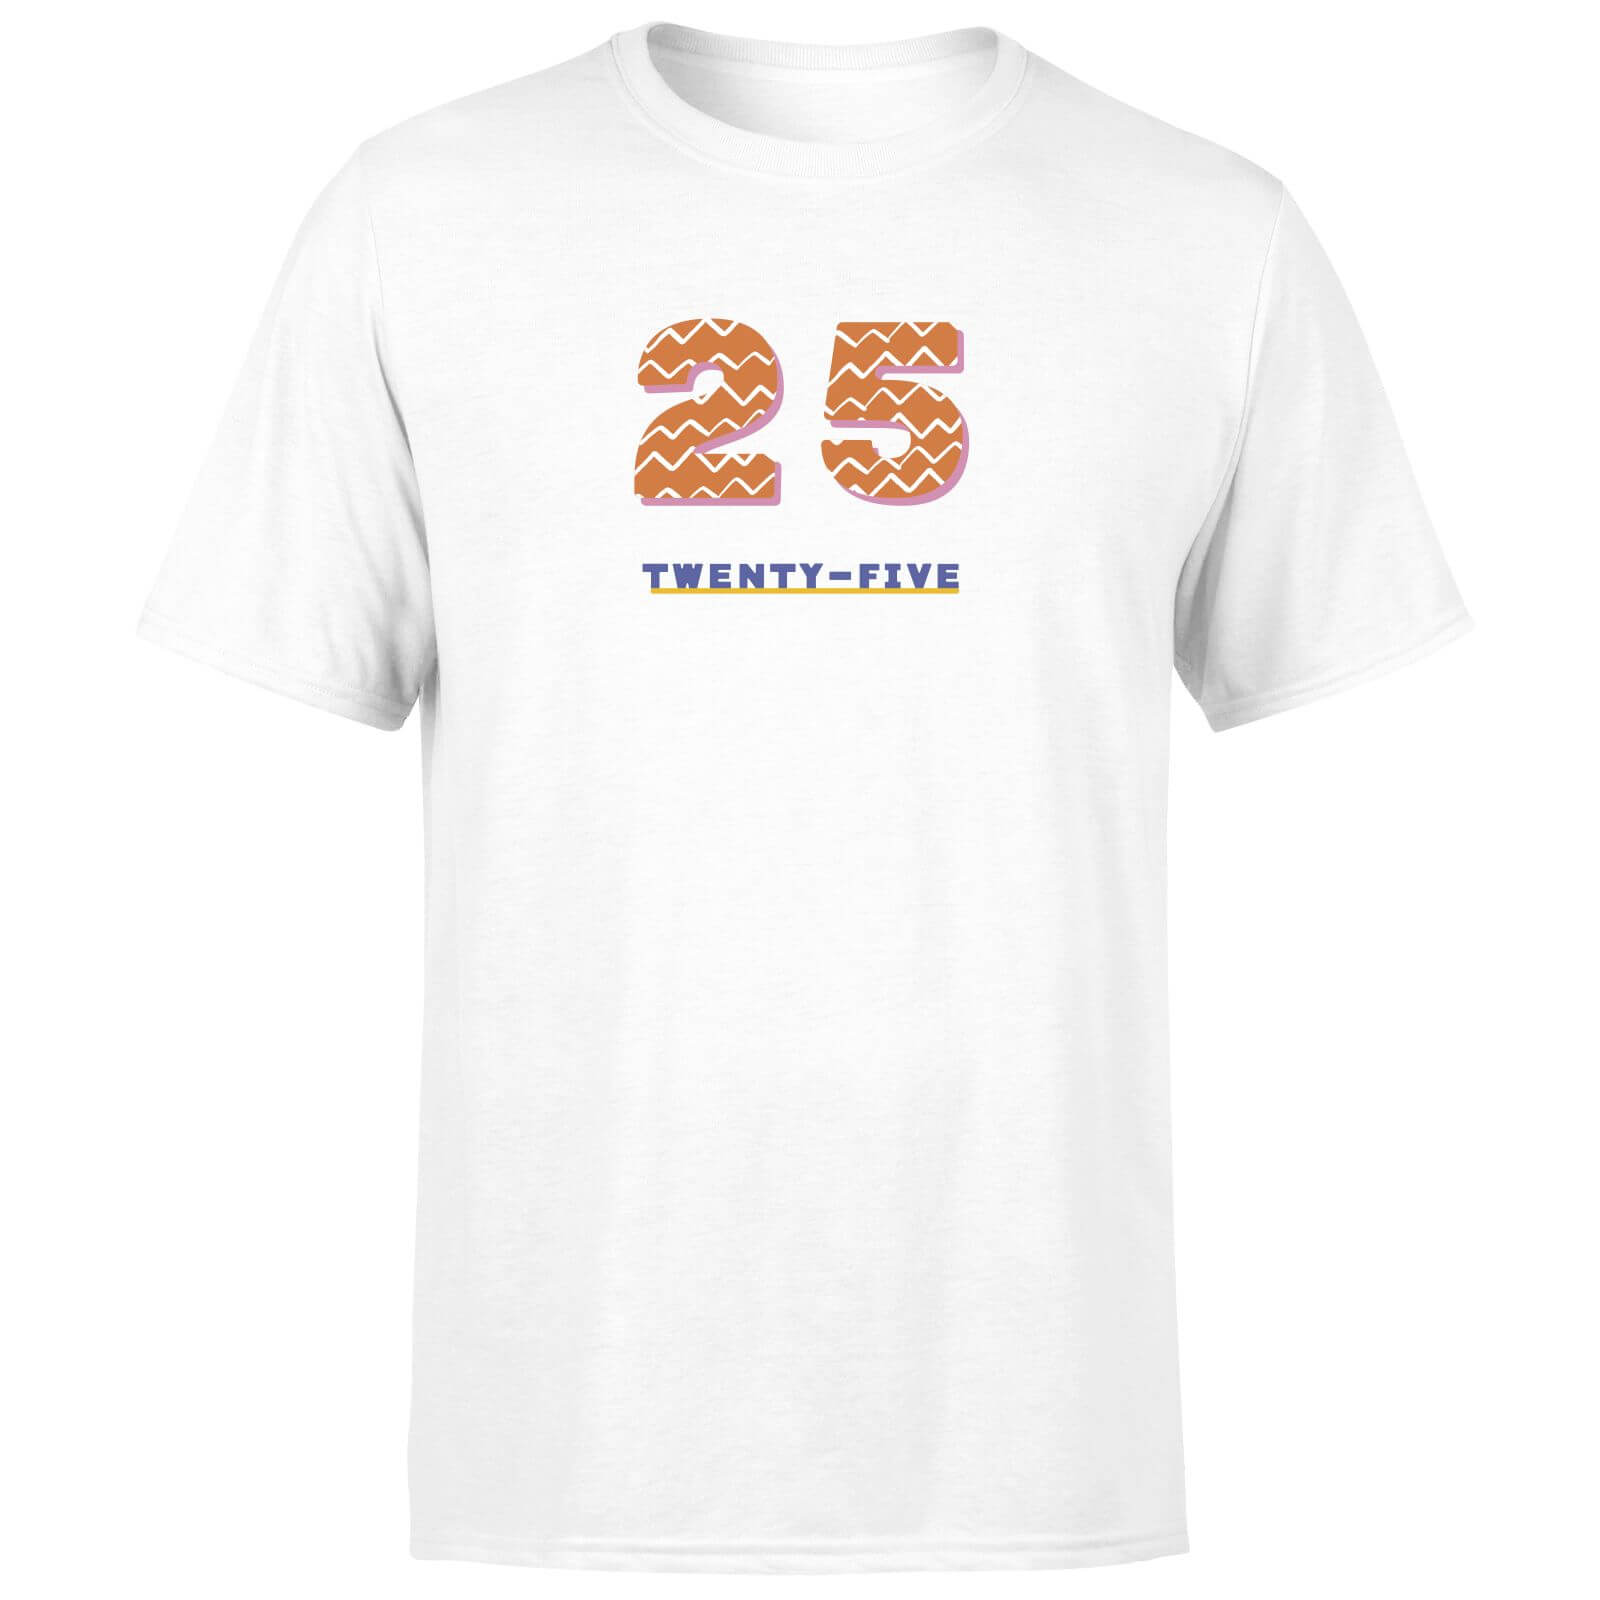 Twenty-Five Men's T-Shirt - White - XS - White